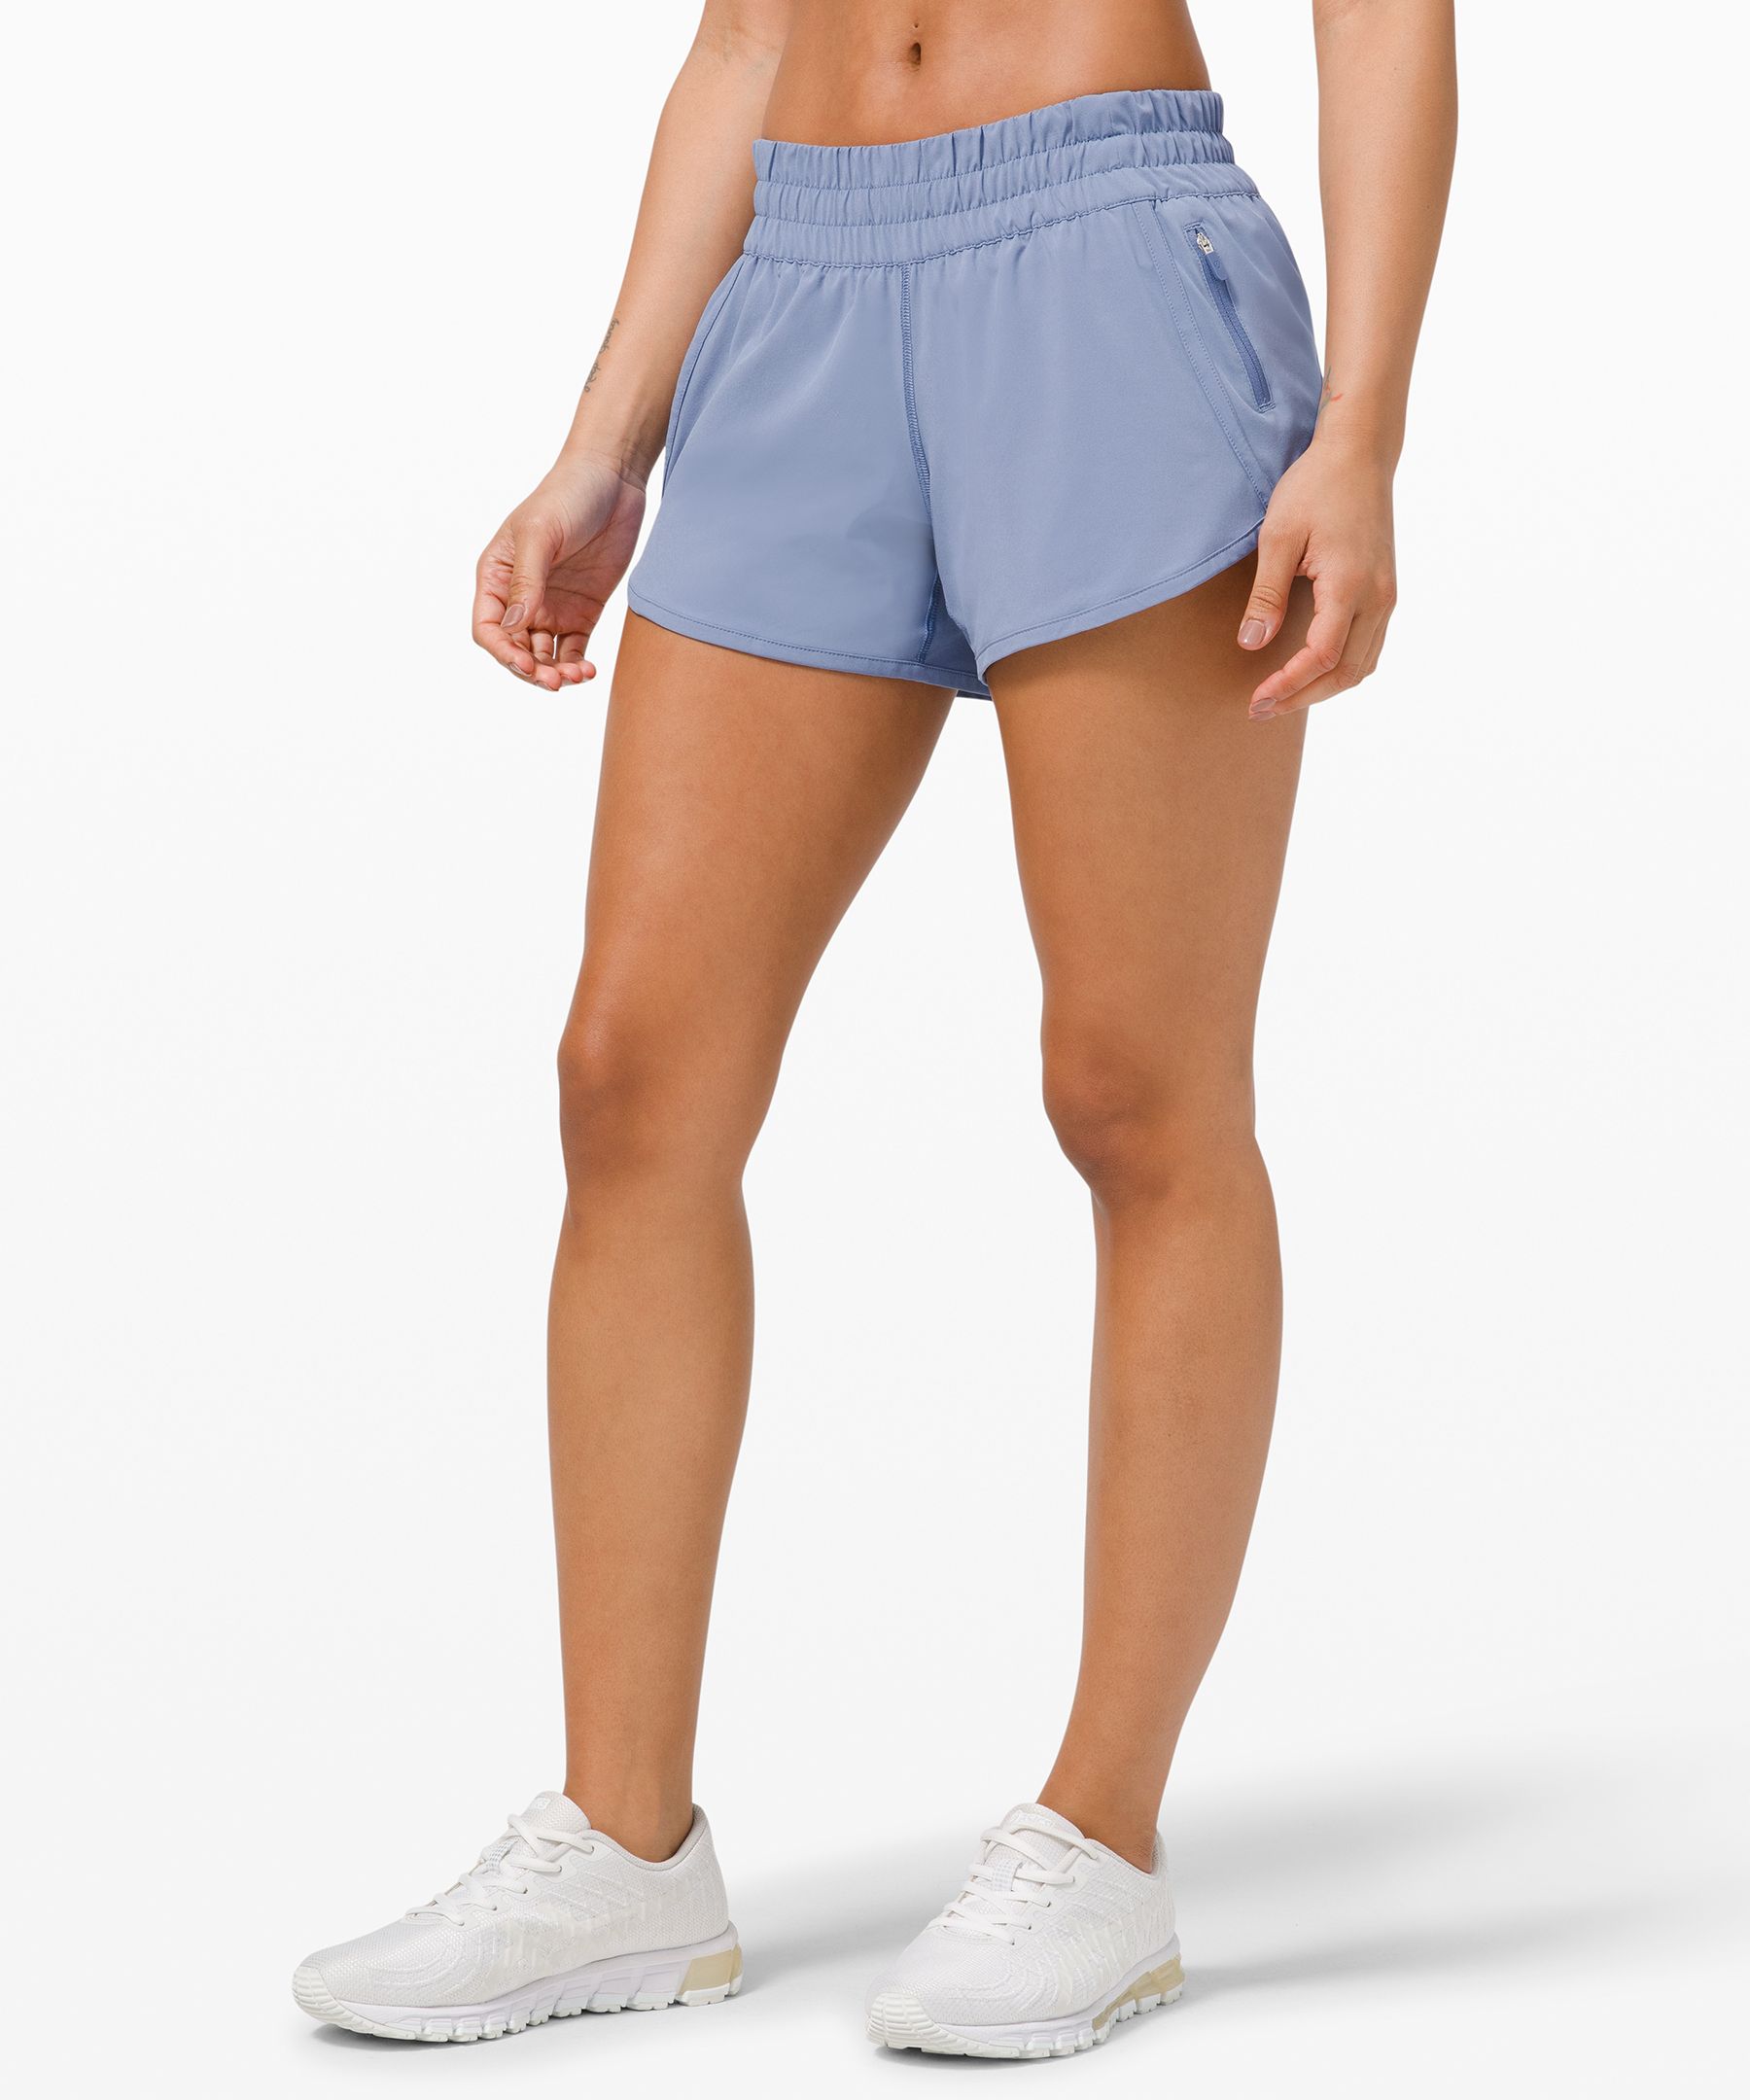 lululemon navy blue shorts